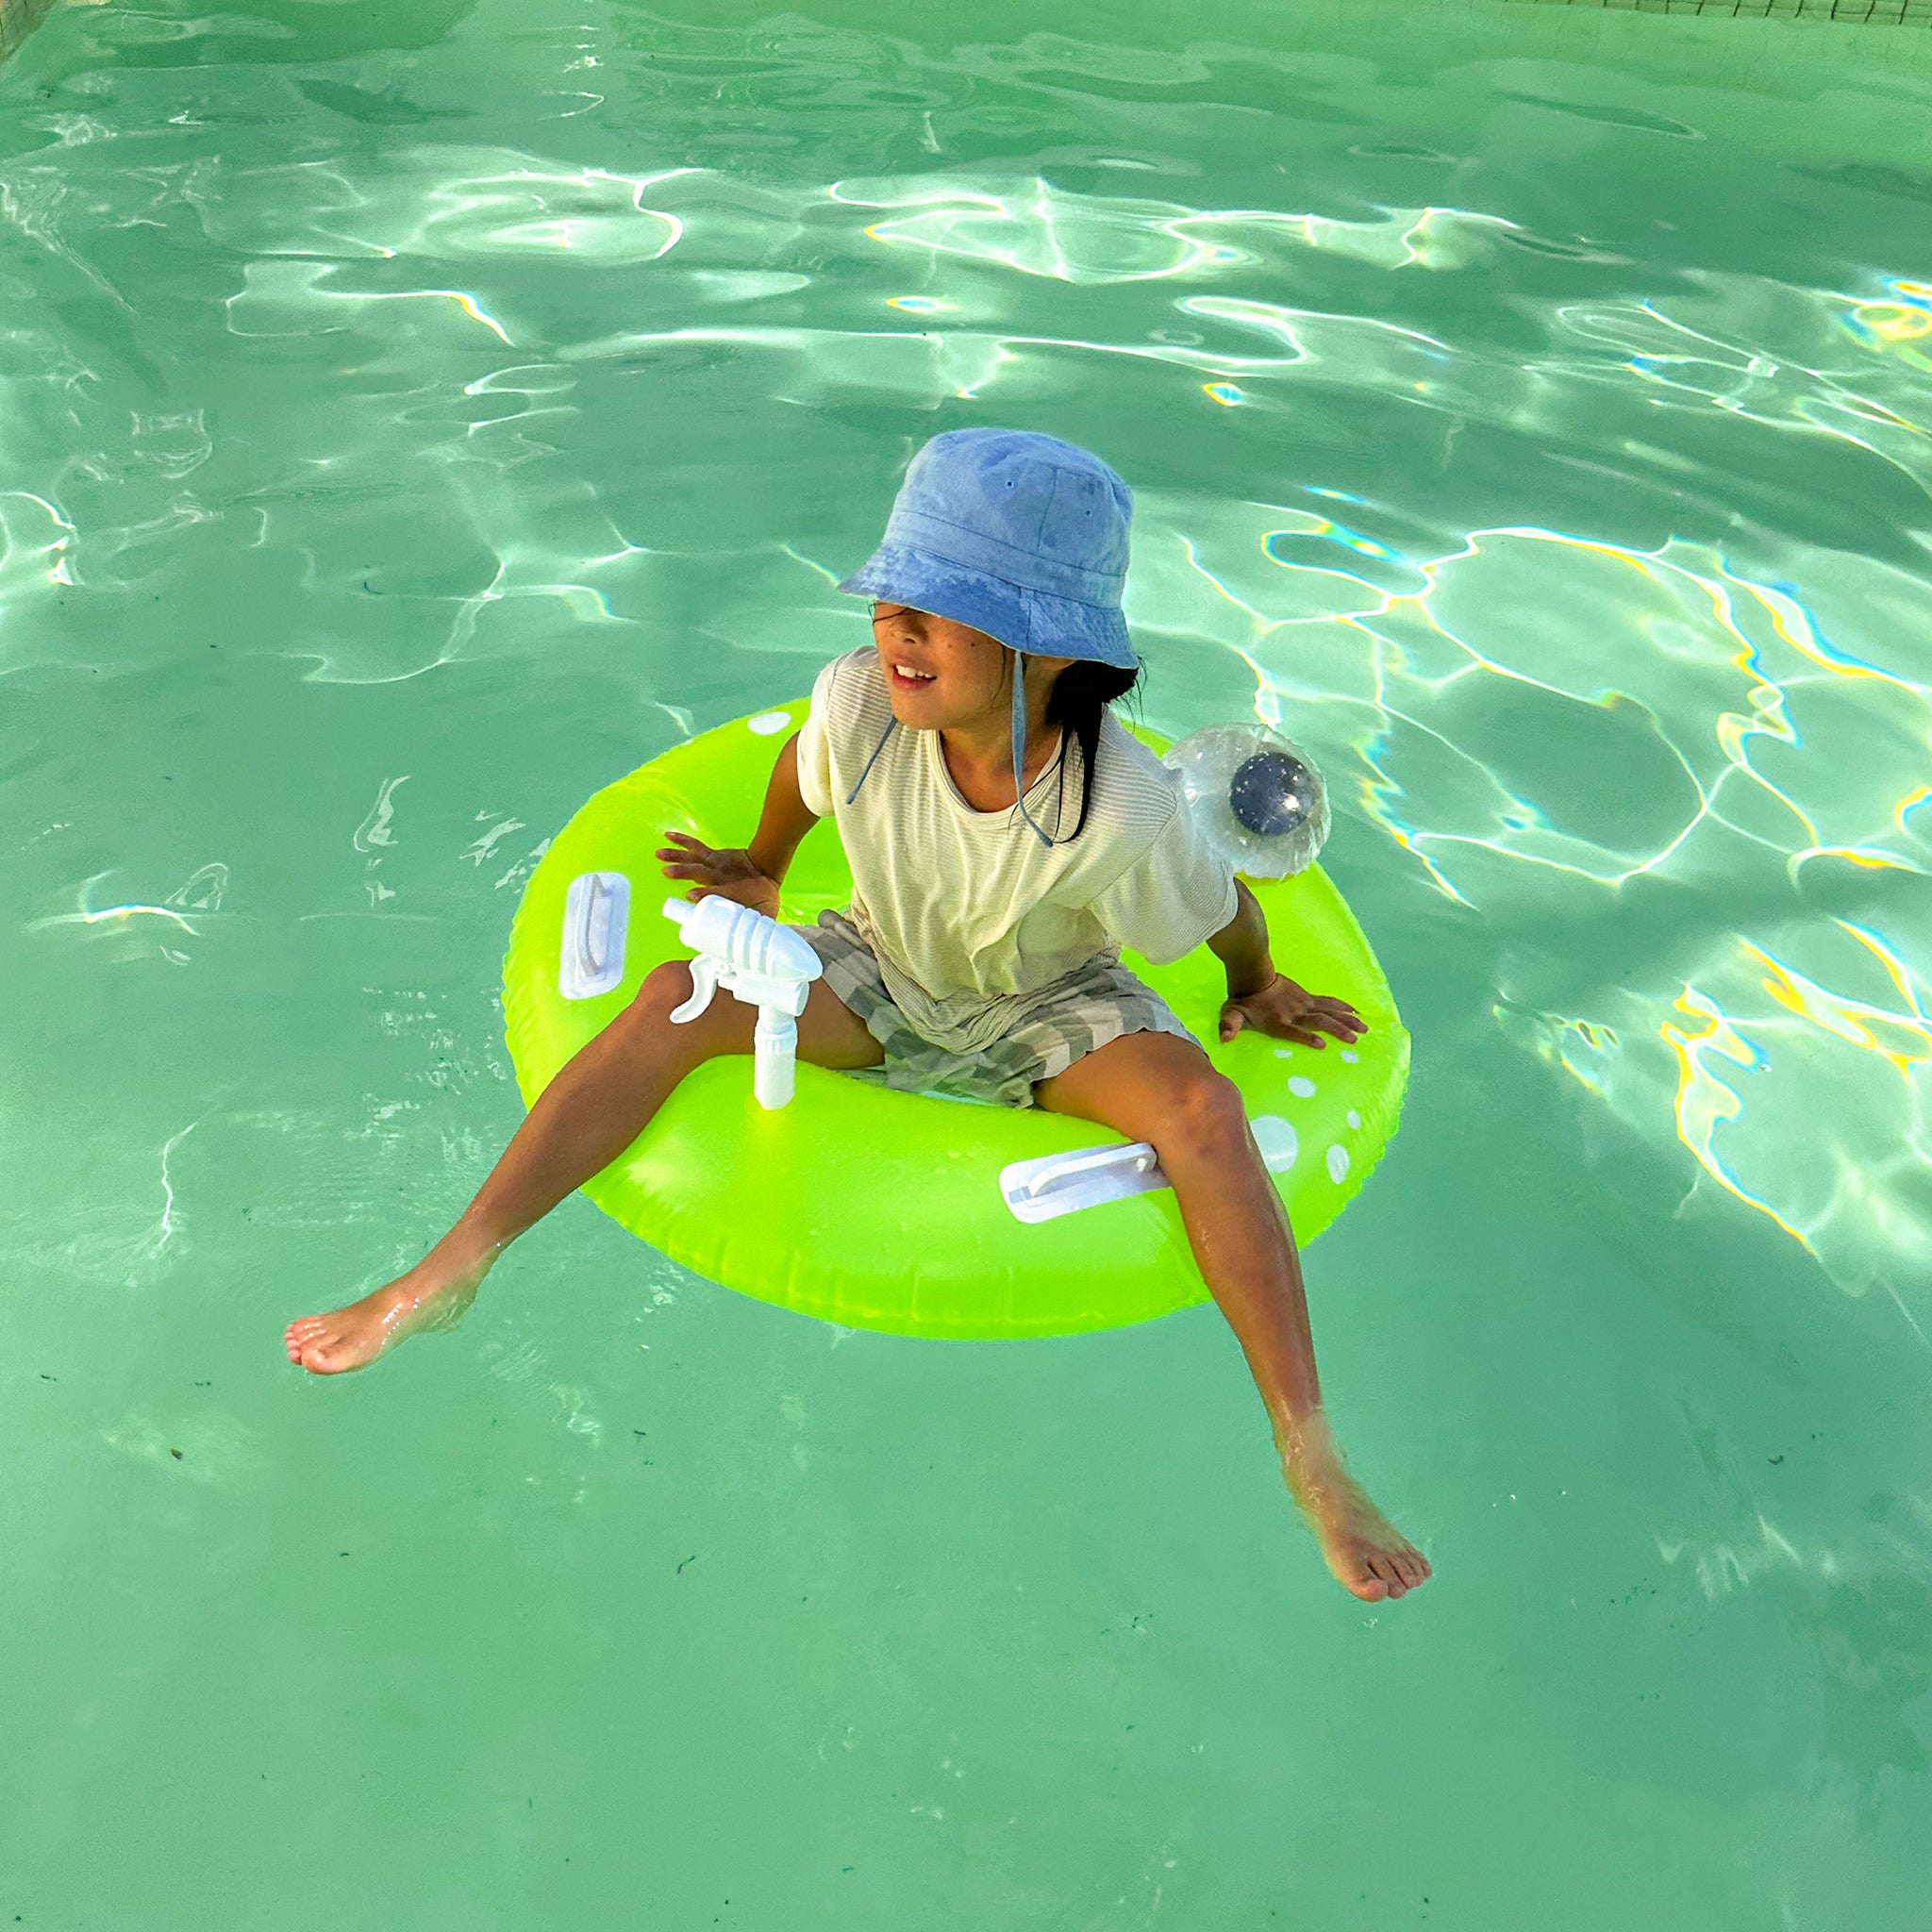 Pool-Ringsauger | Sonny das Meeresgeschöpf Zitrus